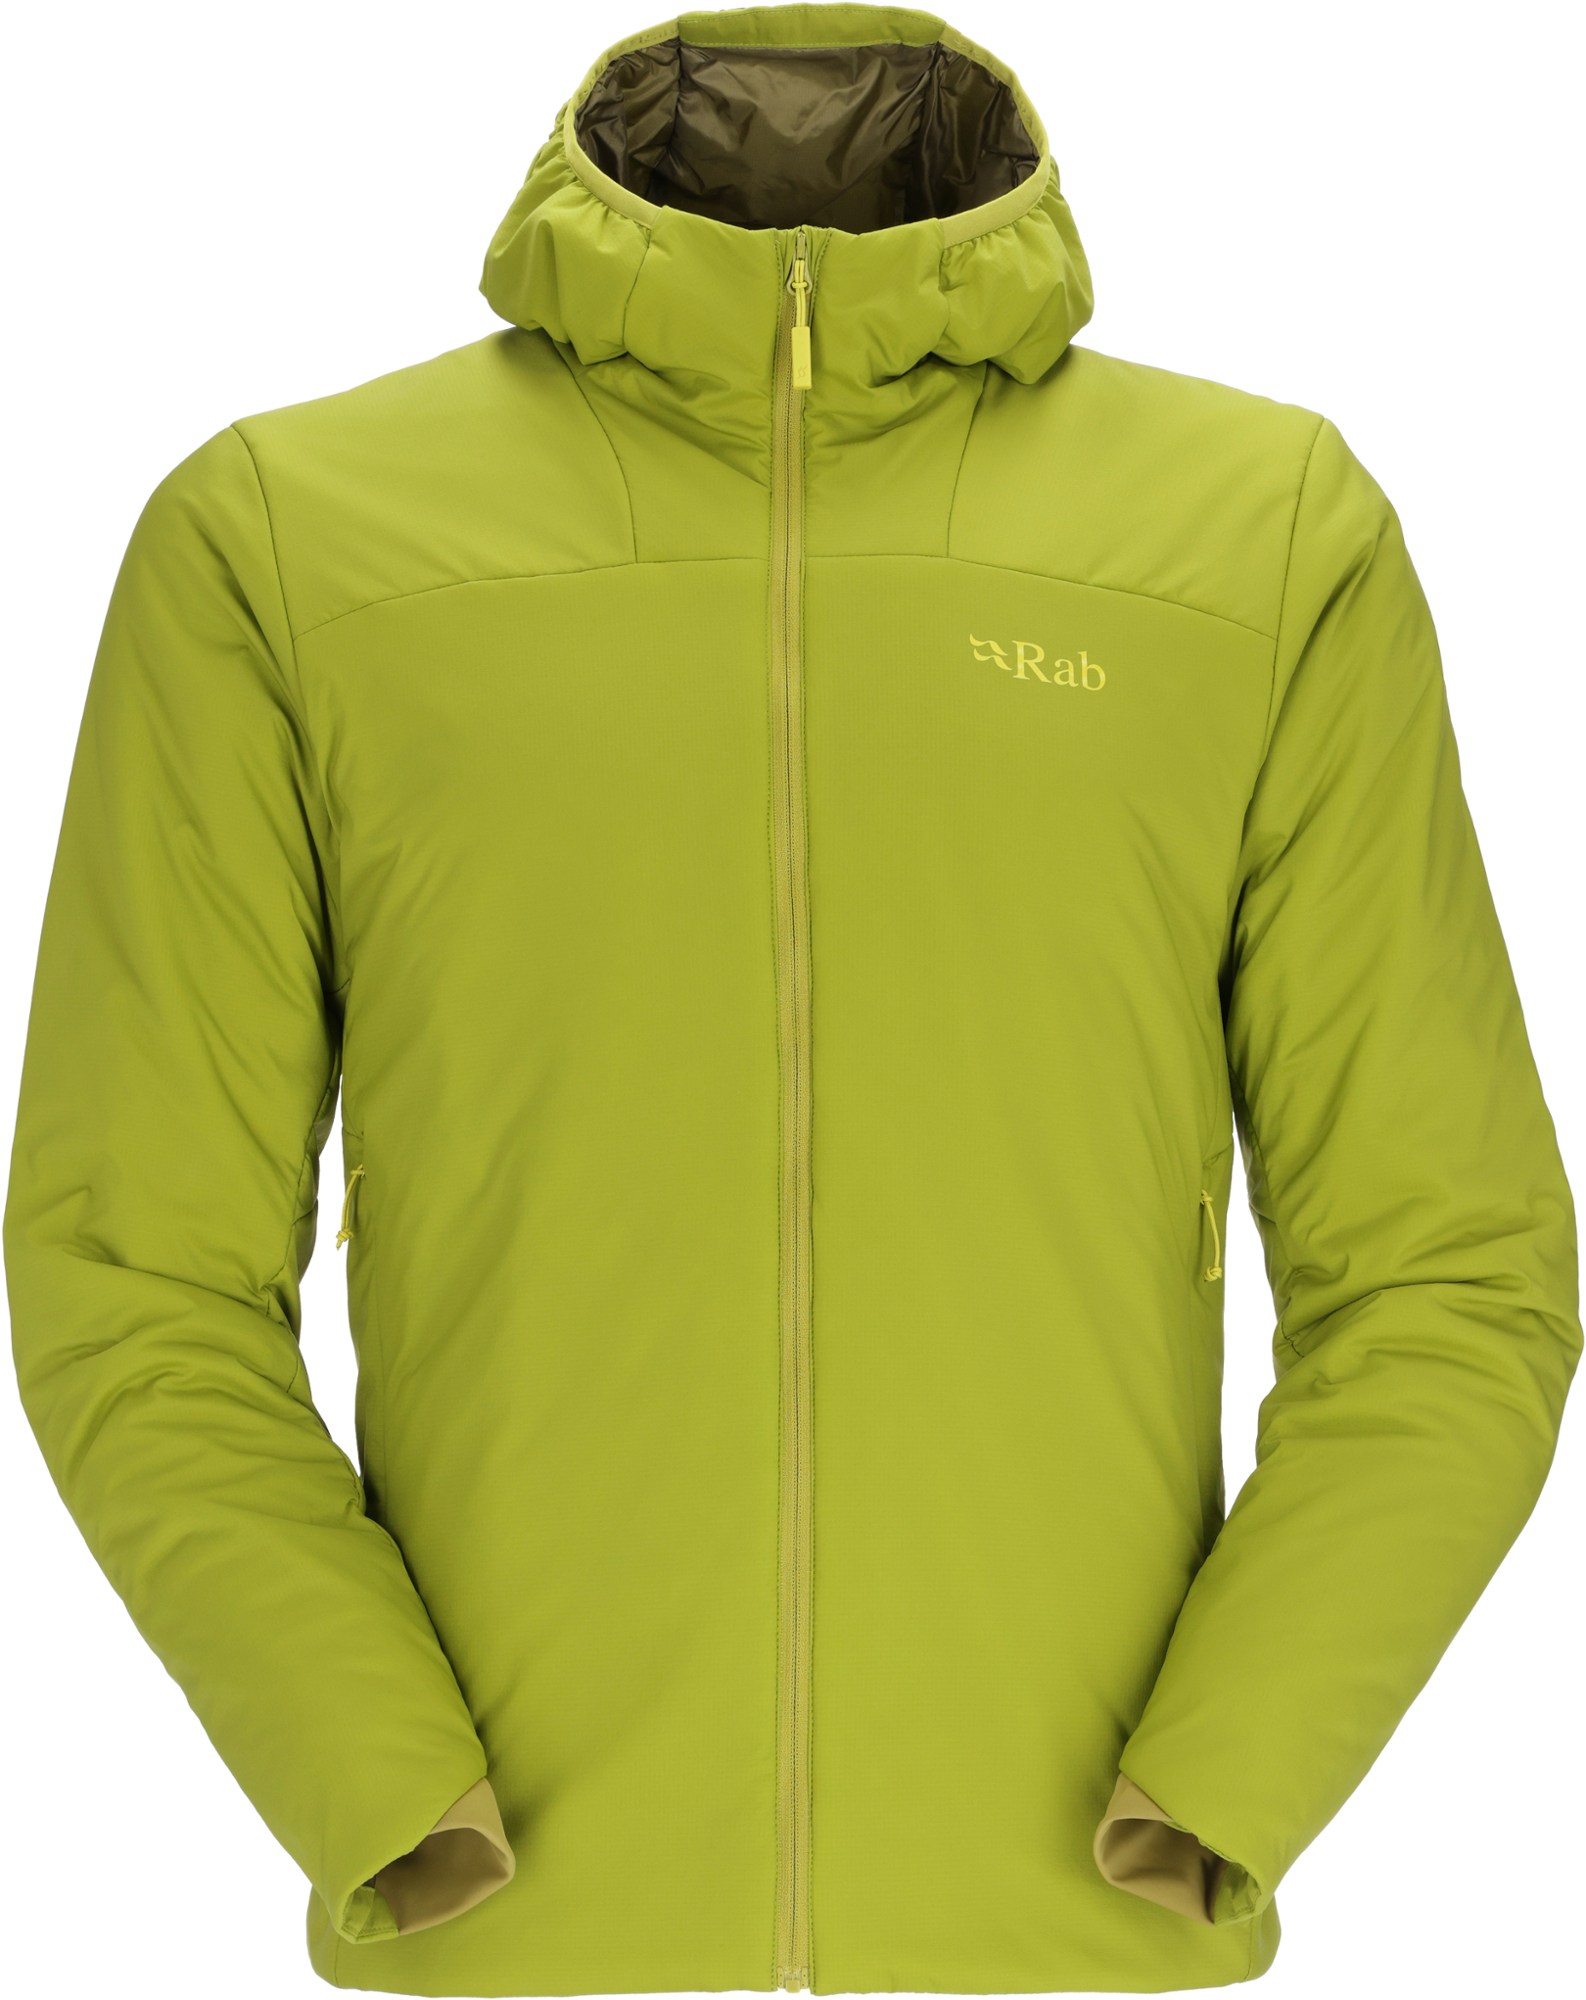 Легкая утепленная куртка Xenair Alpine — мужская Rab, зеленый